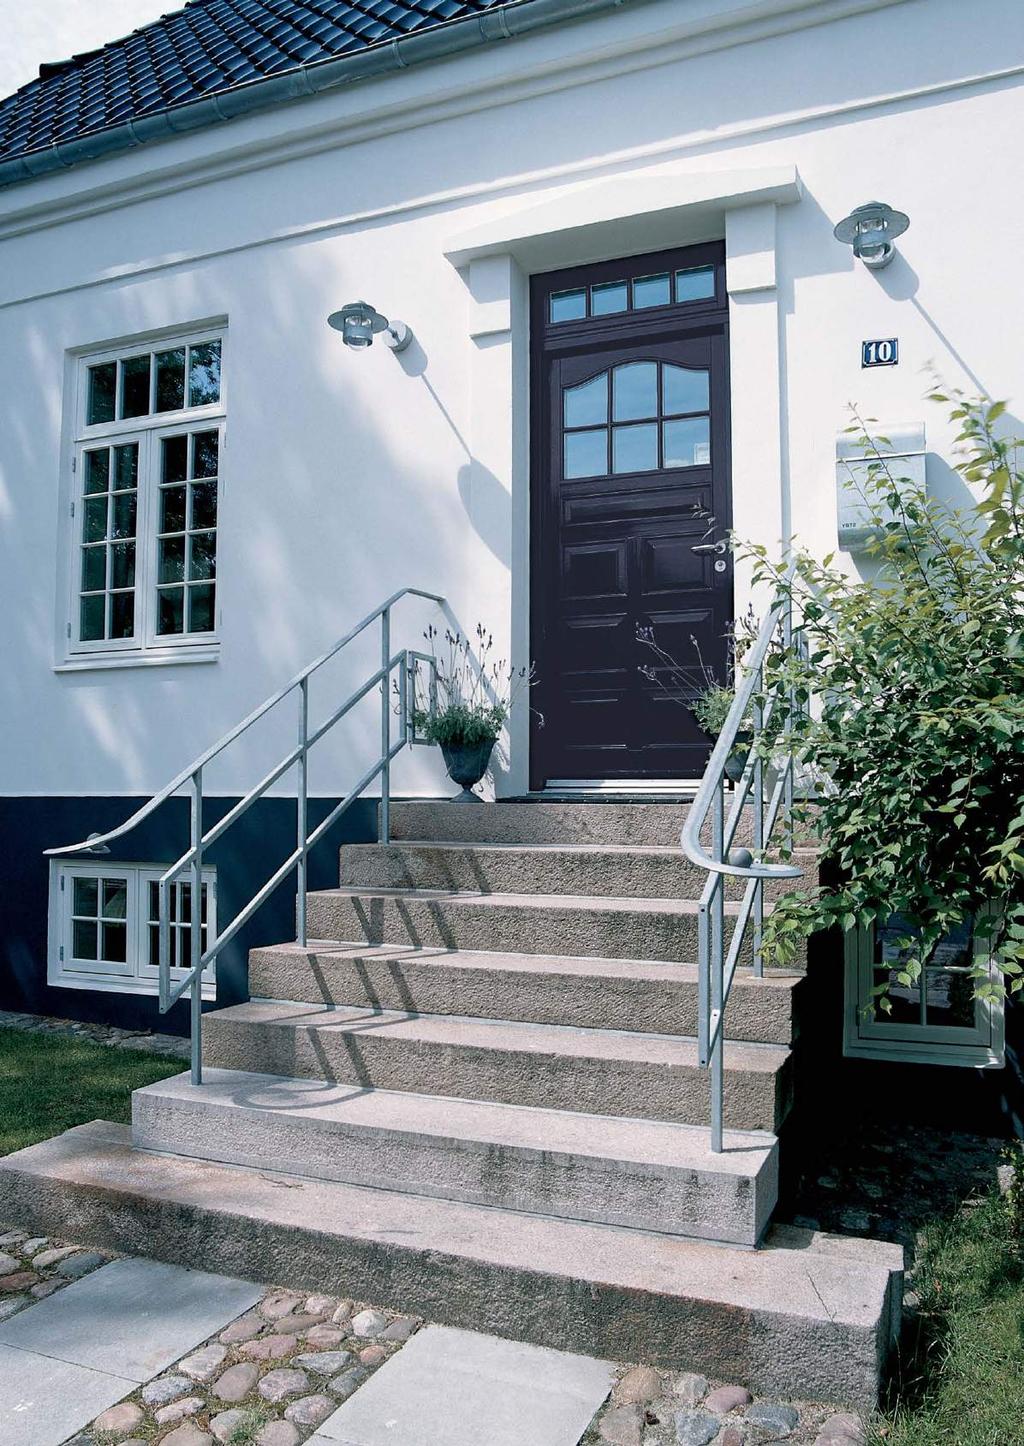 OUTRUP Døren Outrup døren en smuk velkomst Døren er en vigtig del af husets facade og udstråling. Den er husets visitkort og byder dig og dine gæster velkommen.